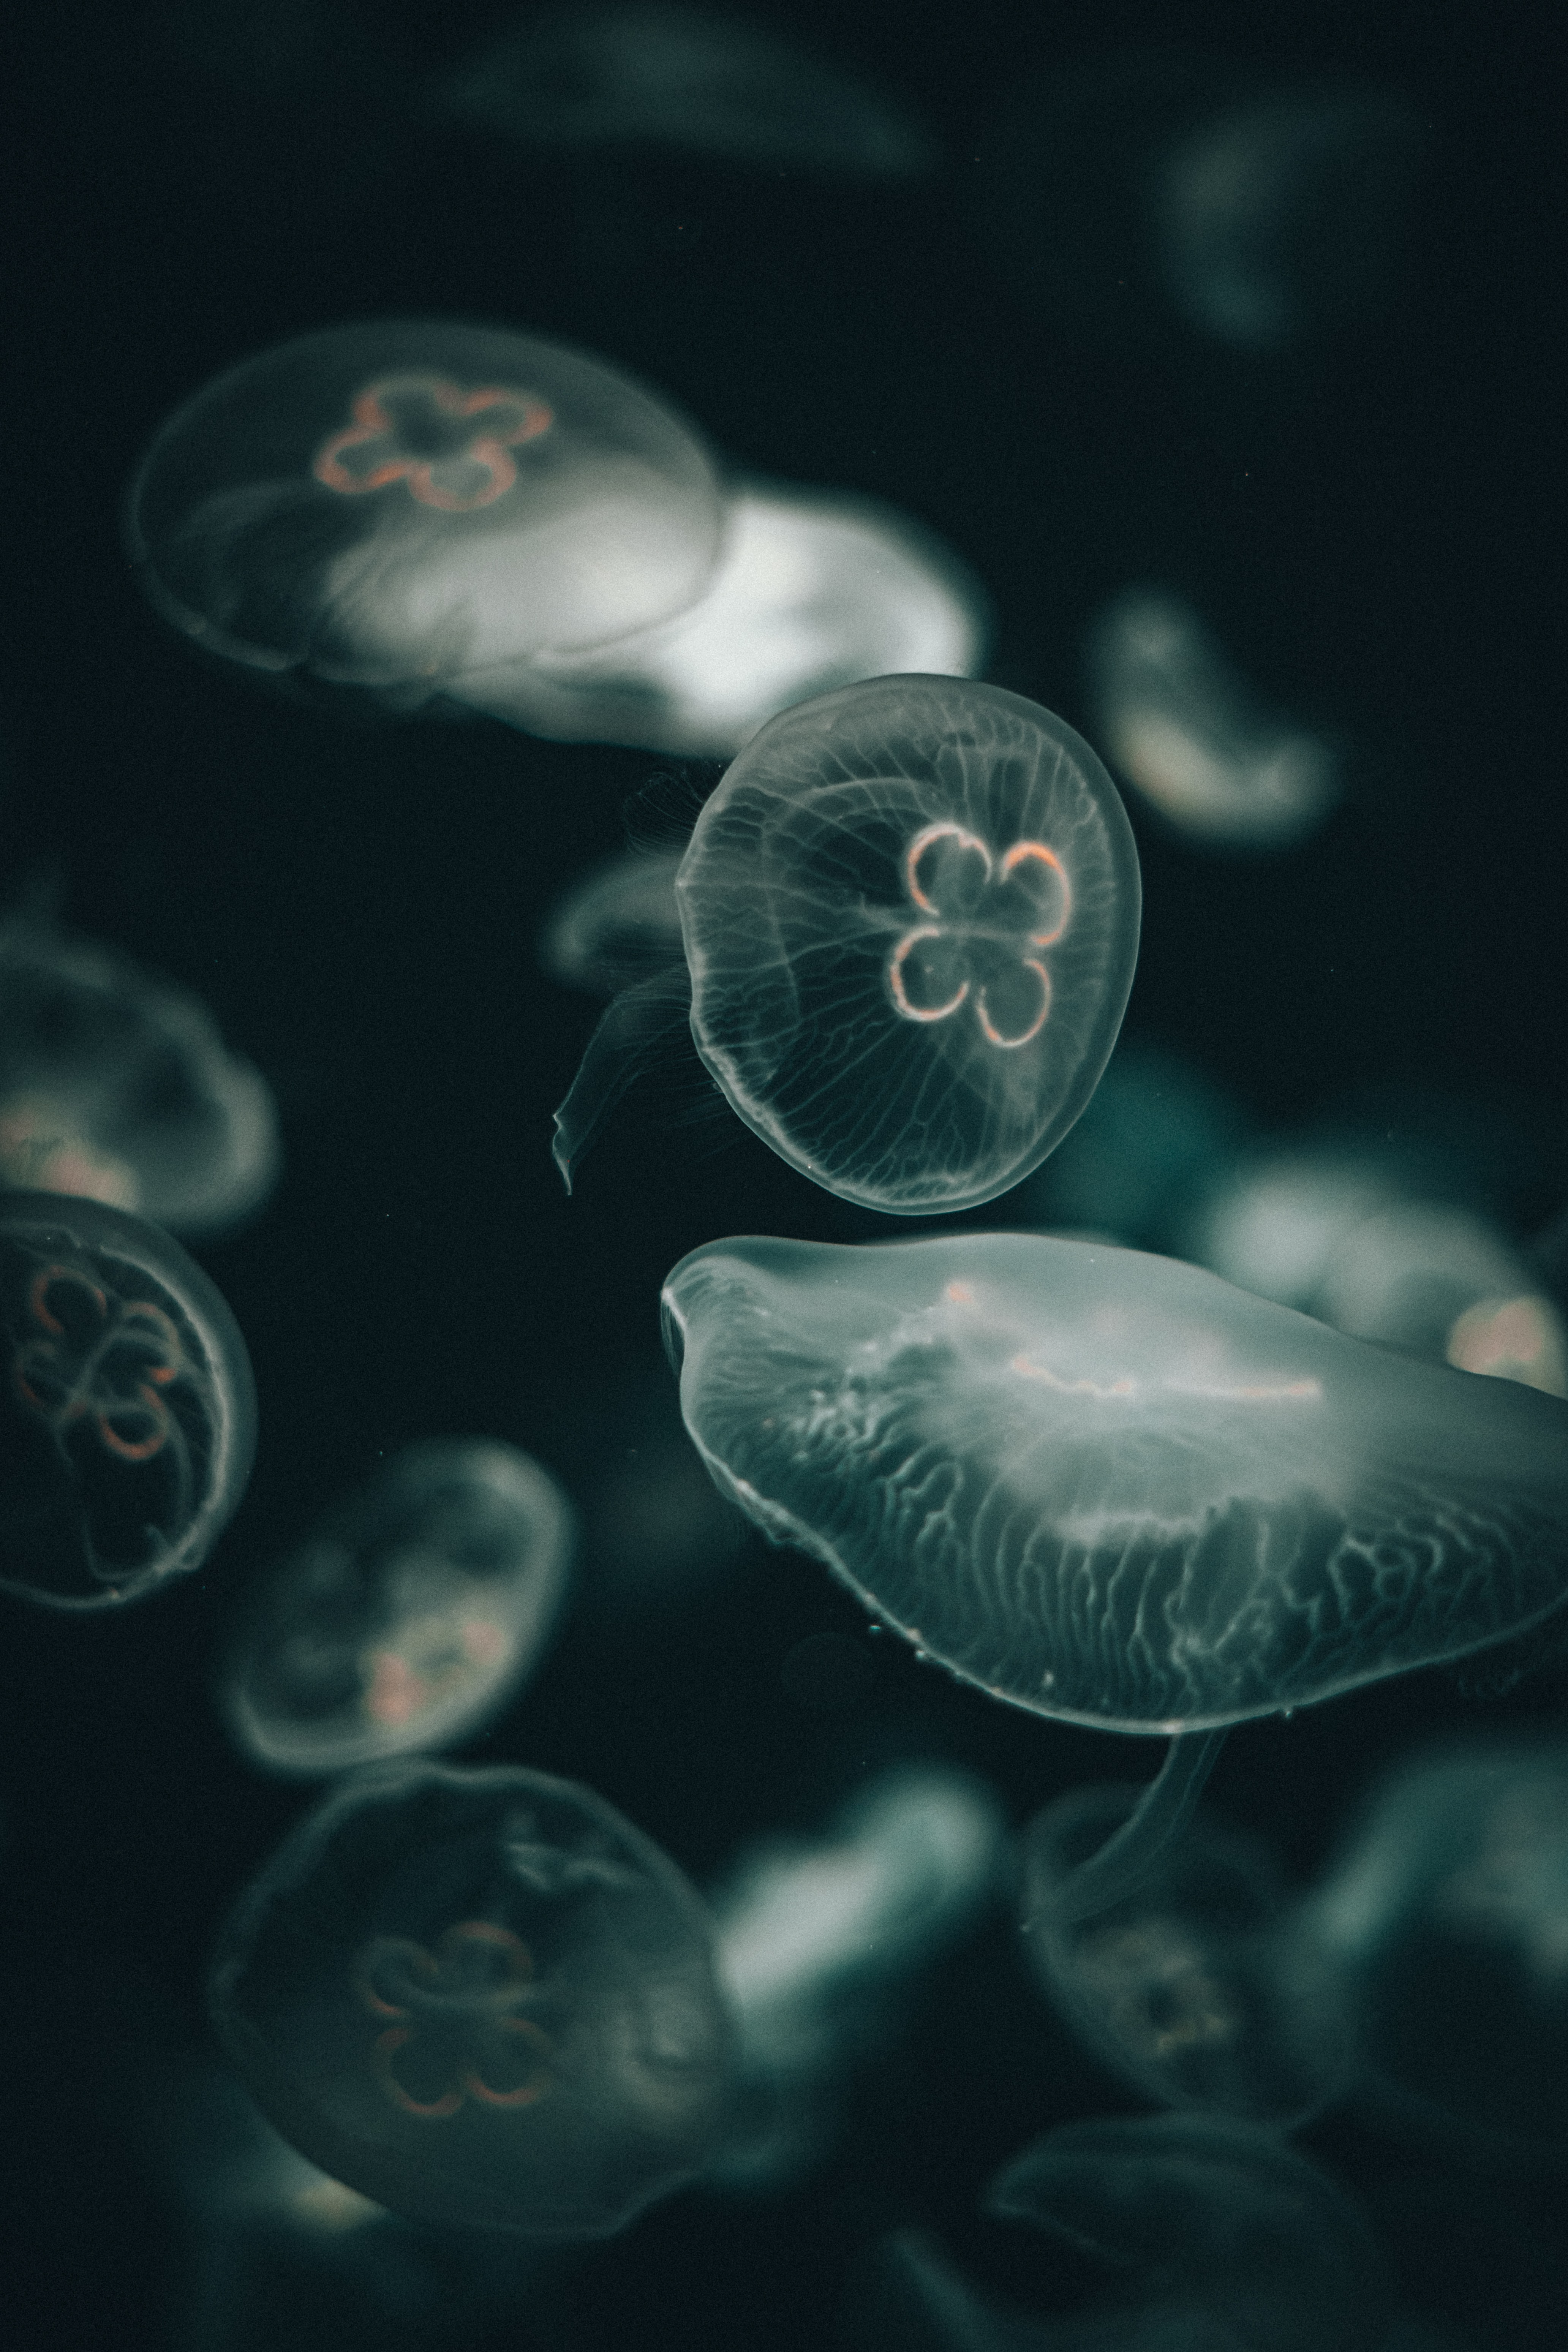 jellyfish, transparent, dark, underwater world, under the water world